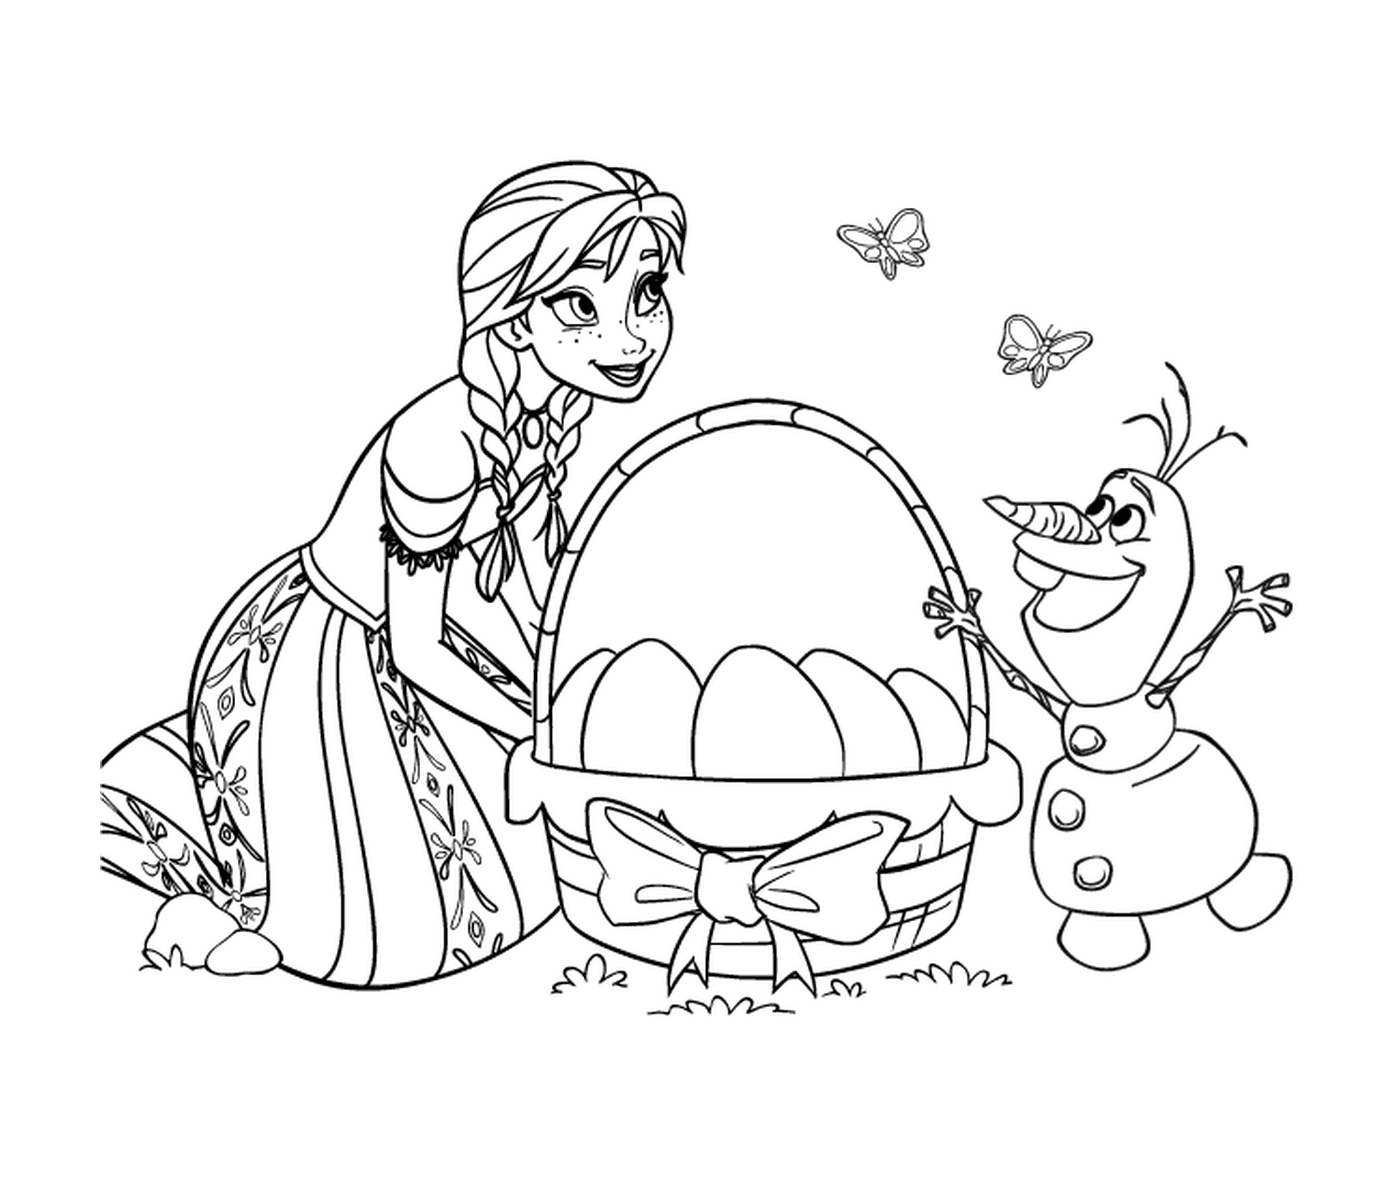  Imprimir Páscoa com Elsa e Olaf da Rainha da Neve 